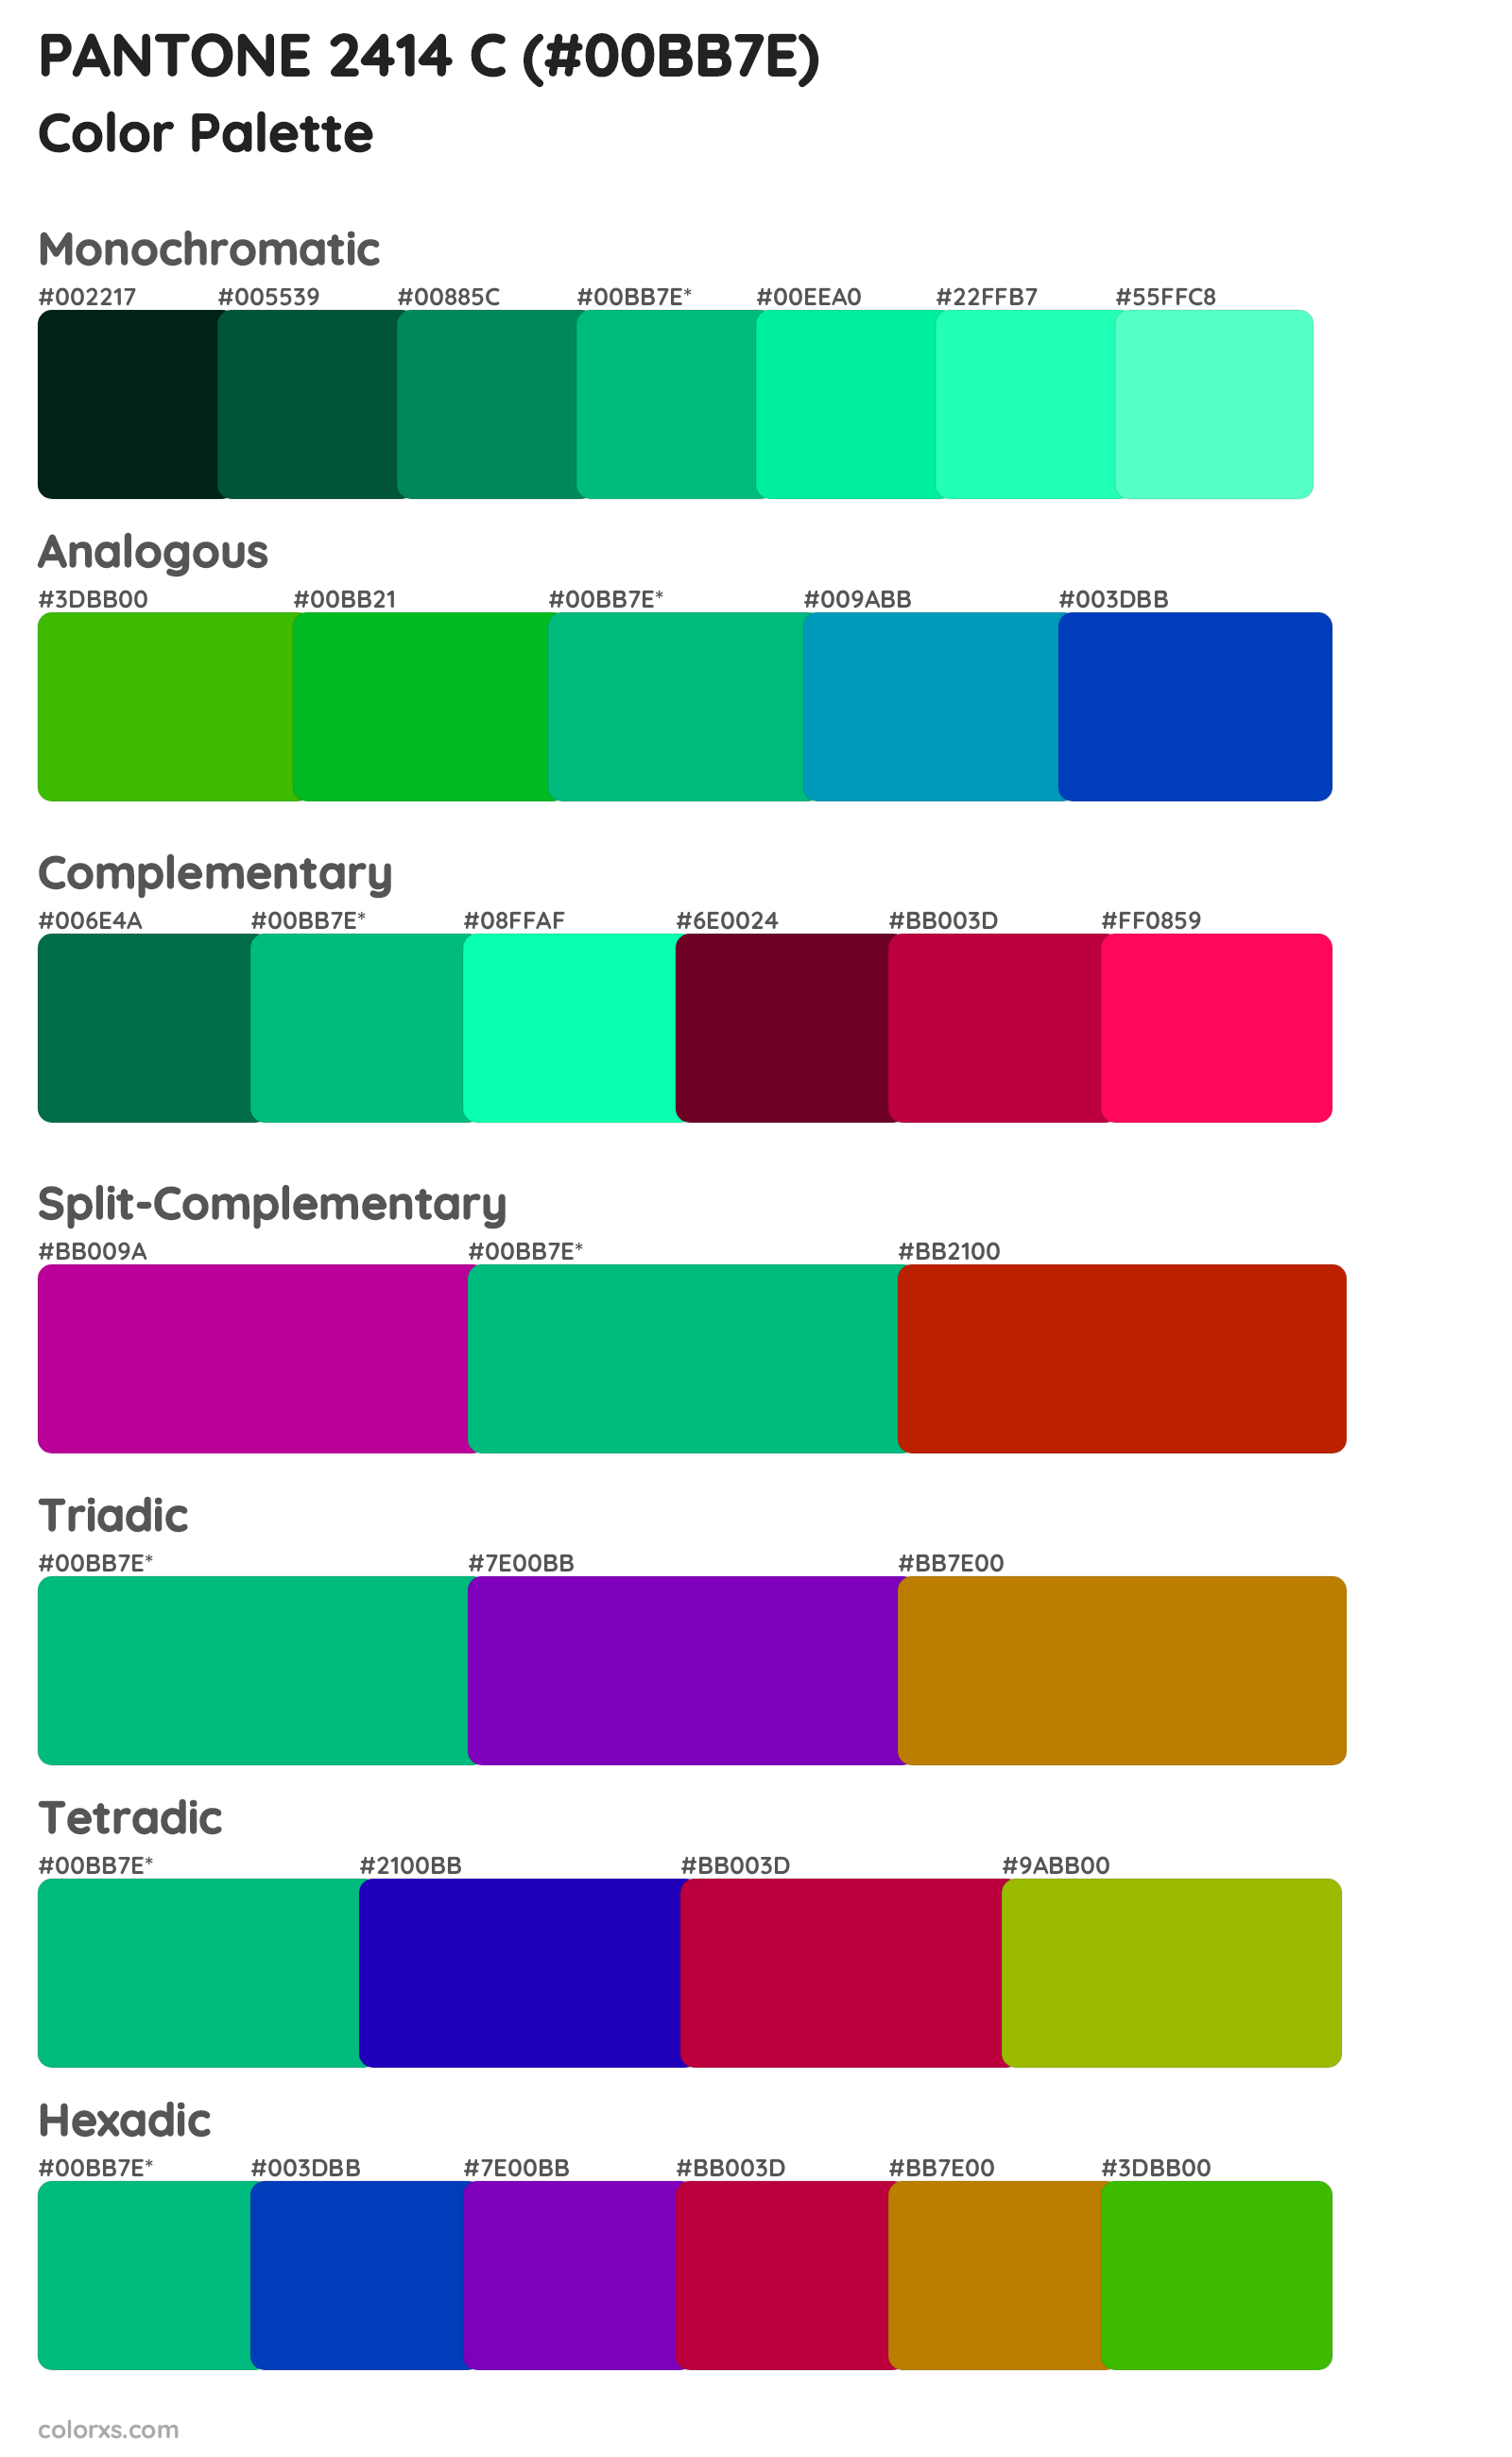 PANTONE 2414 C Color Scheme Palettes